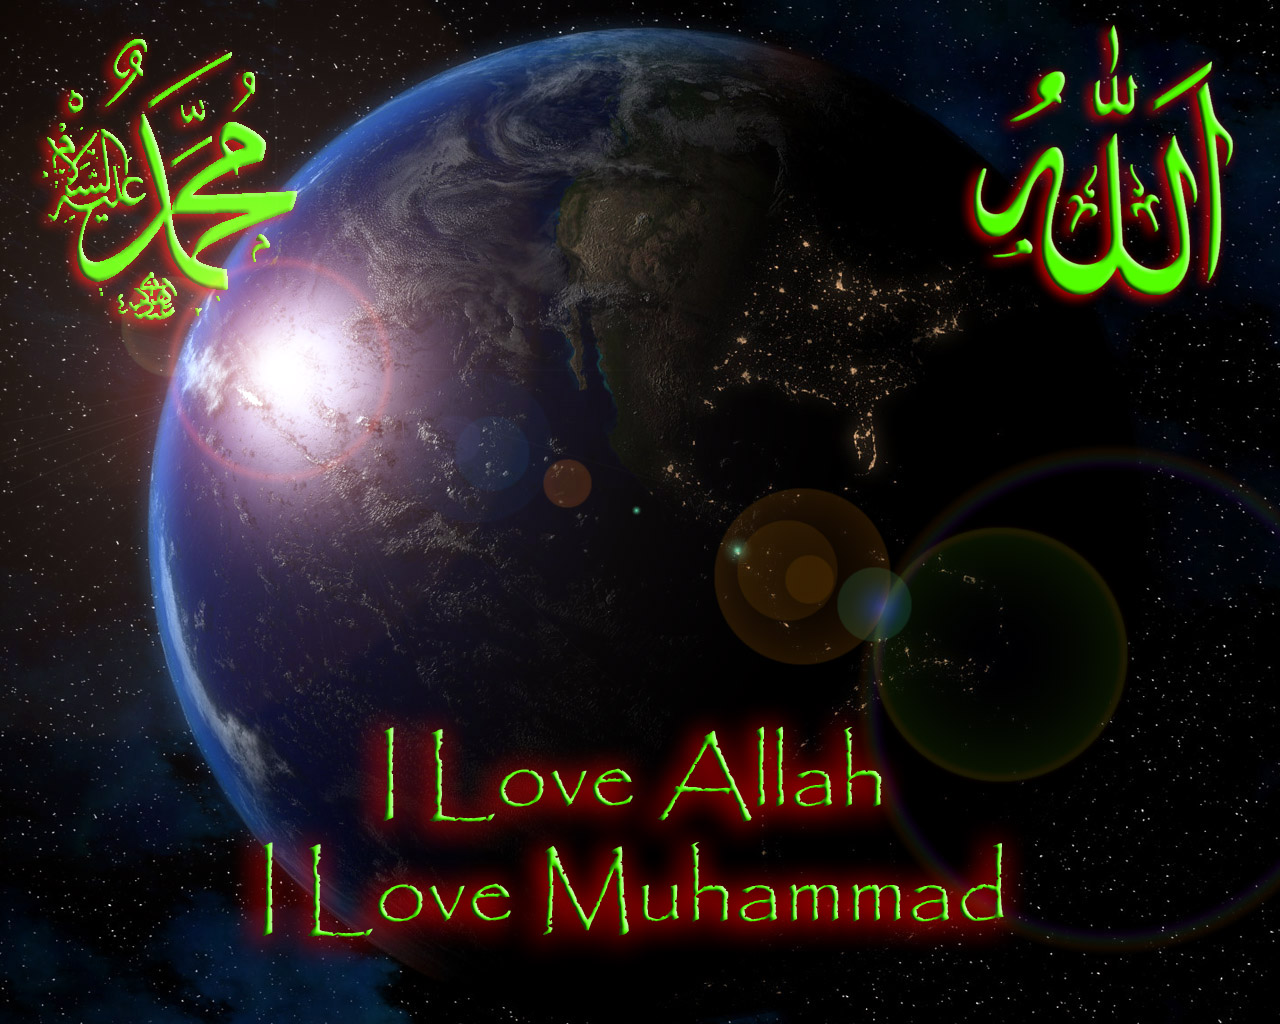 Free download Love Allah I Love Rasulullah April 2010 Wallpaper Islami [1280x1024] for your Desktop, Mobile & Tablet. Explore Kaligrafi Islam Wallpaper. Kaligrafi Islam Wallpaper, Wallpaper Islam, Islam Wallpaper